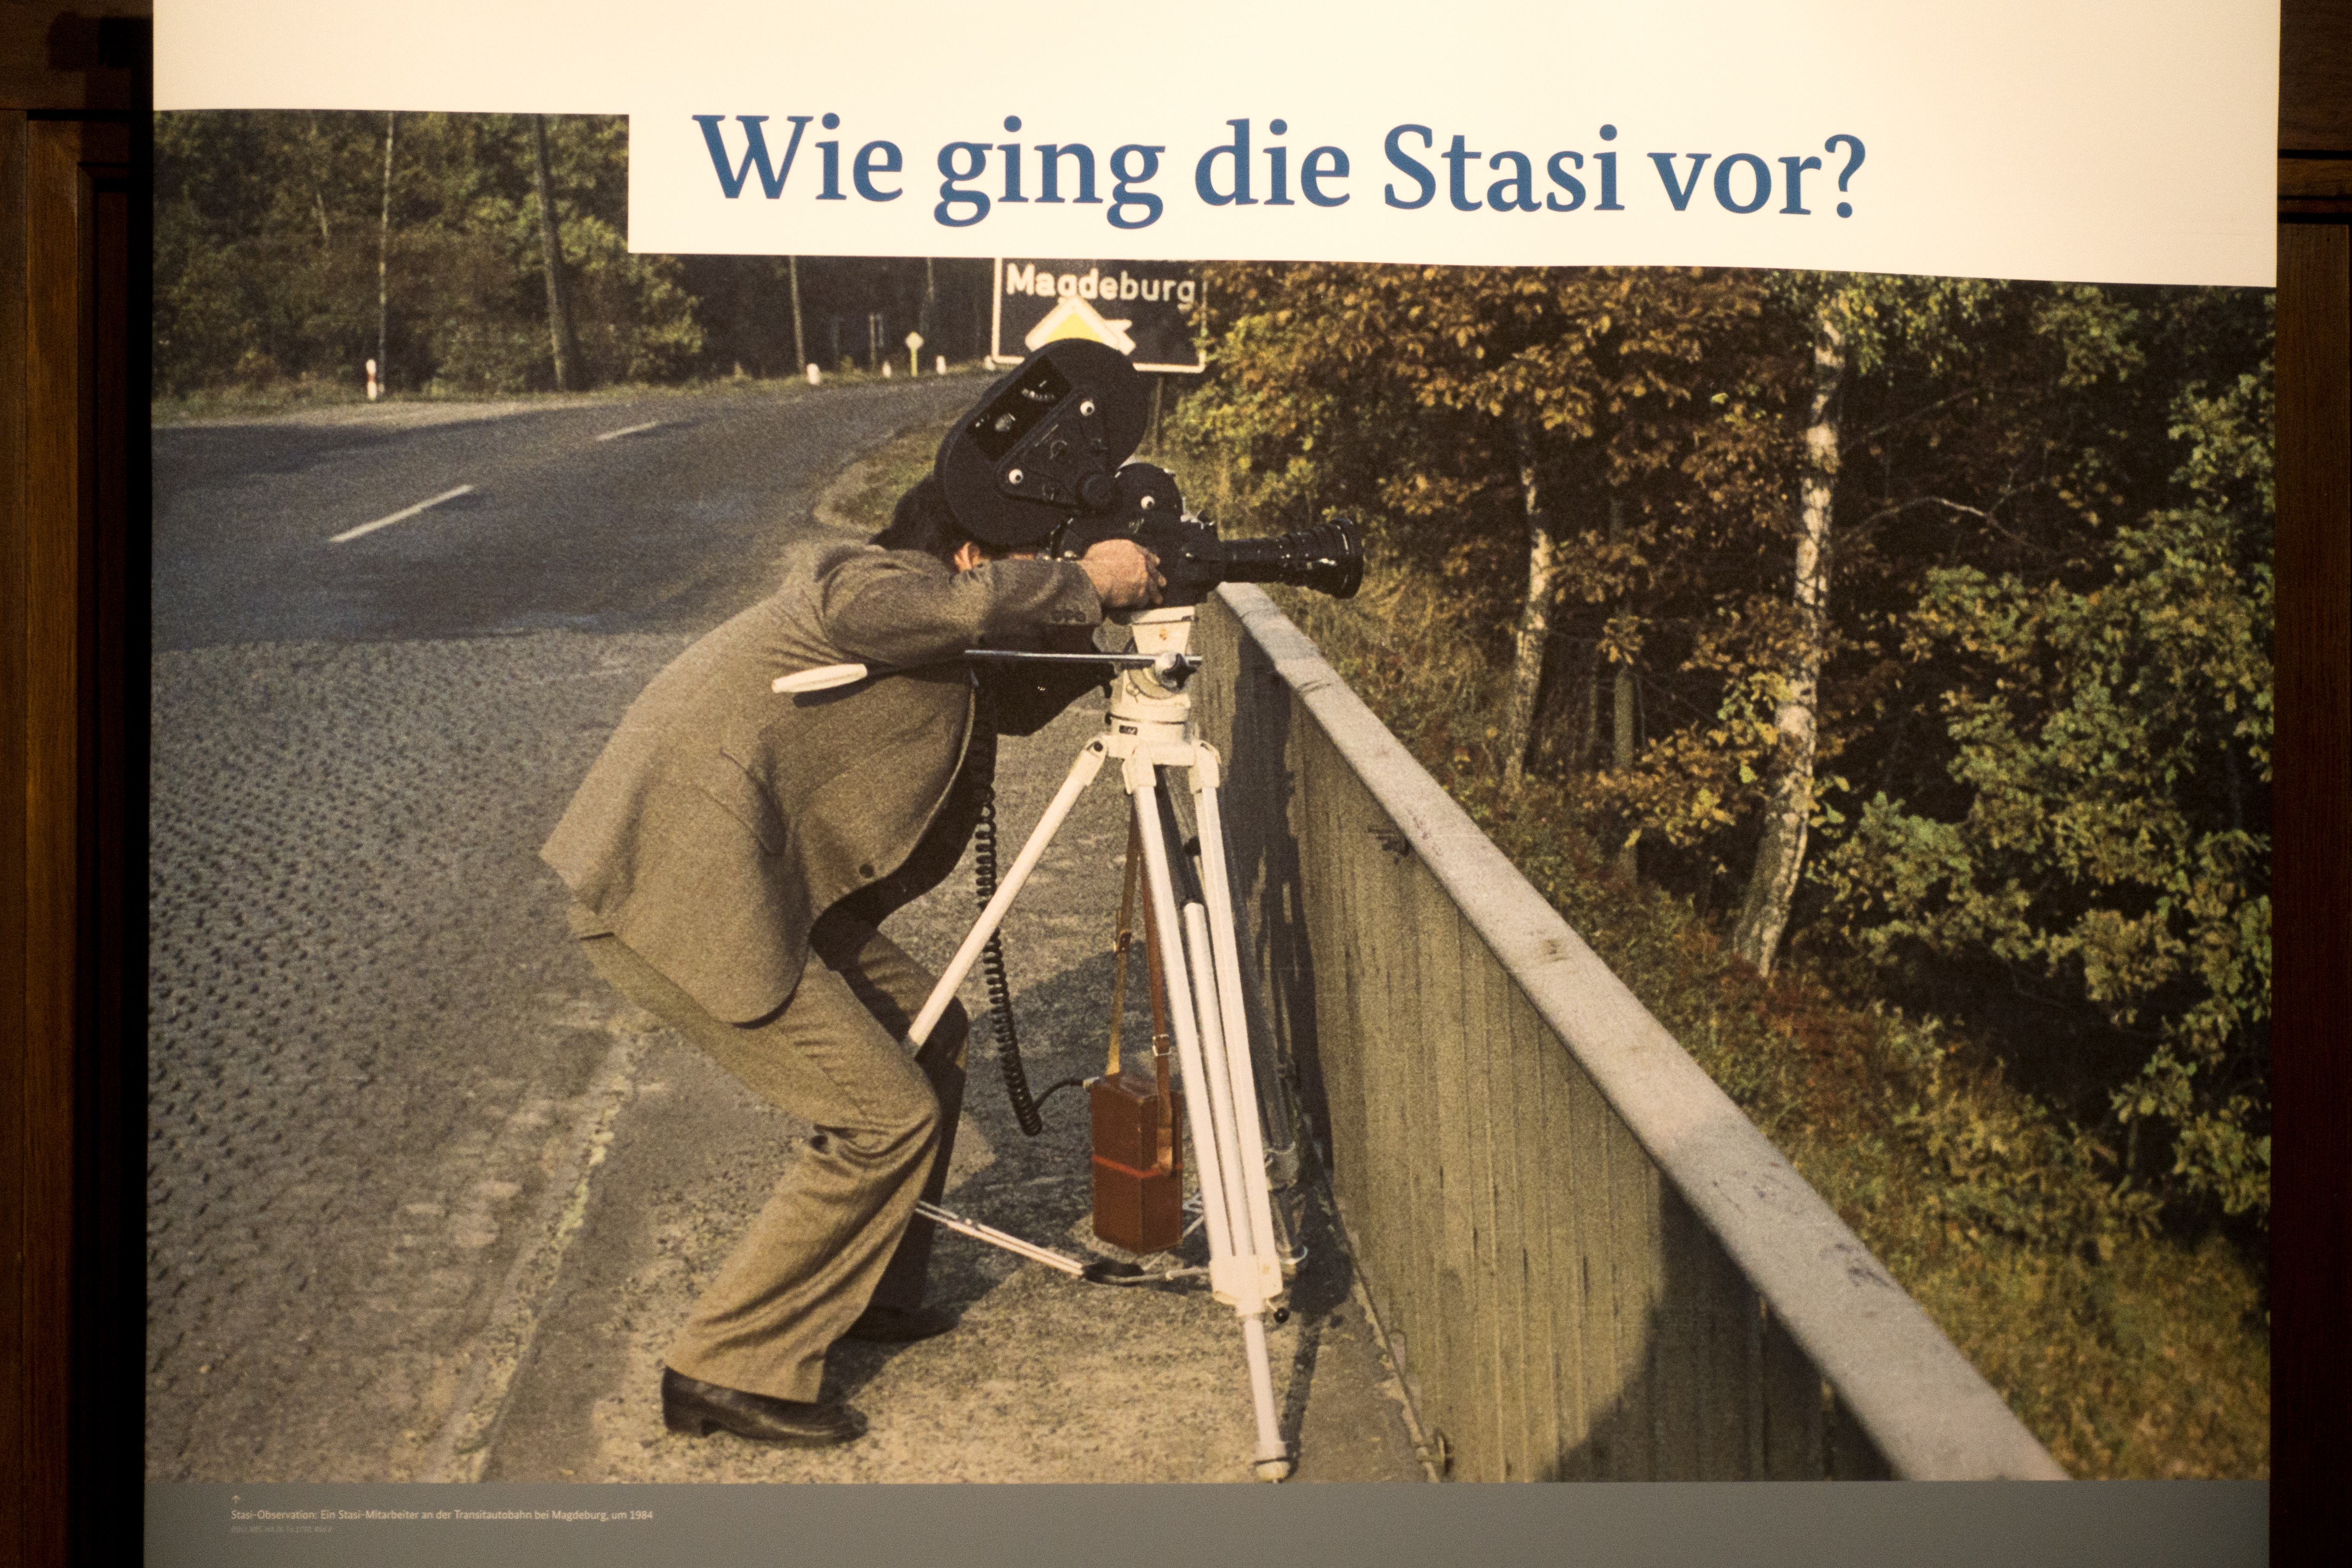 Das Bild zeigt ein Foto, das für eine Ausstellung verwendet wird und einen Stasi-Mitarbeiter im Jahr 1984 darstellt, wie er Überwachungsausrüstung bedient. Der Mitarbeiter ist in der Aktion zu sehen, wie er ein Fernglas oder ein anderes optisches Überwachungsinstrument auf einem Stativ bedient, das an einer Brücke aufgestellt ist. Im Hintergrund ist ein Straßenschild, das in Richtung Magdeburg zeigt. Über dem Foto steht der Text "Wie ging die Stasi vor?", was darauf hindeutet, dass die Ausstellung sich mit den Methoden und Vorgehensweisen der Staatssicherheit beschäftigt. Unter dem Bild befindet sich ein erläuternder Text, der allerdings im gegebenen Ausschnitt nicht vollständig lesbar ist. Bei Klick vergrößert sich das Bild.